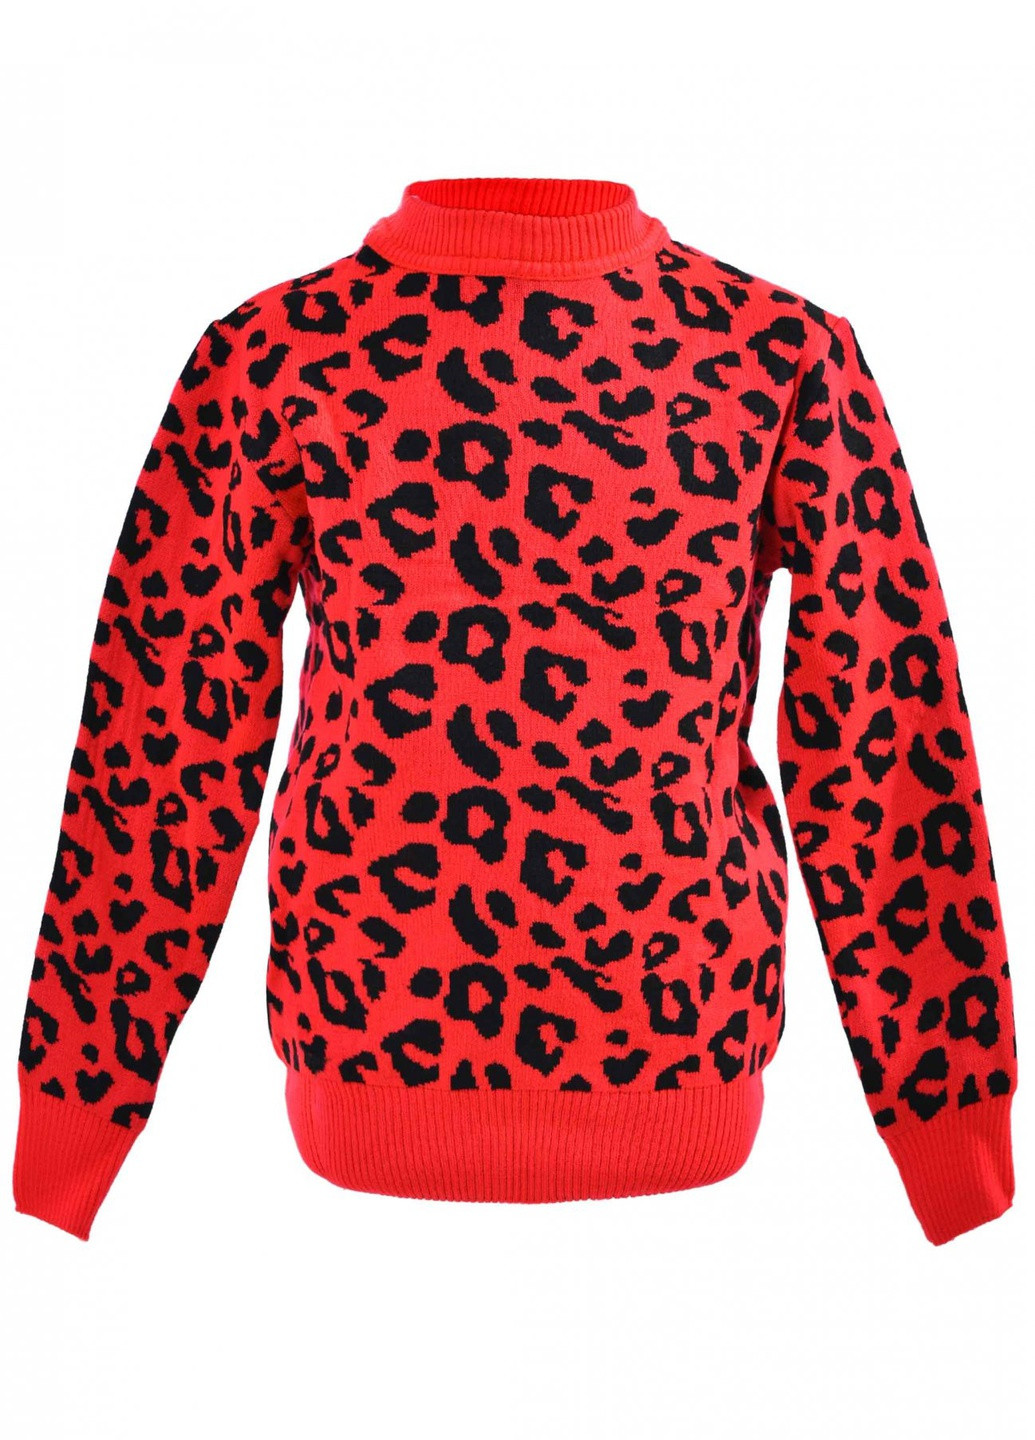 Червоний зимовий светри светр леопард (леопард)17181-709 Lemanta